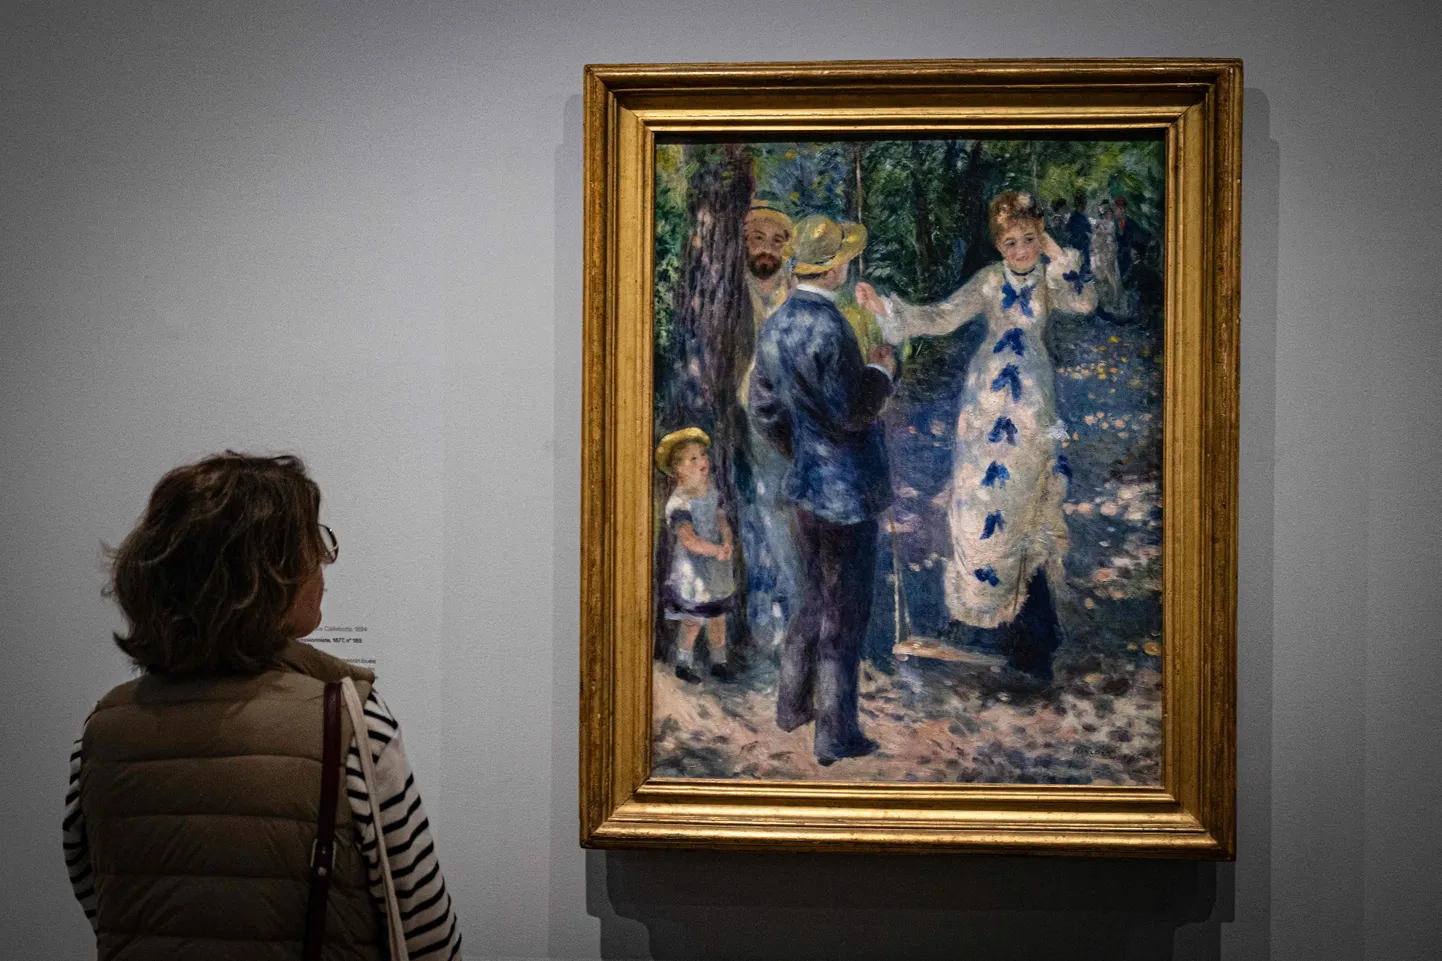 Geniaalne Pierre-Auguste Renoir on üks jäljendatumaid maalikunstnikke. Tuleb välja, et netioksjonil võib liigagi kergesti sattuda võltsingu otsa.